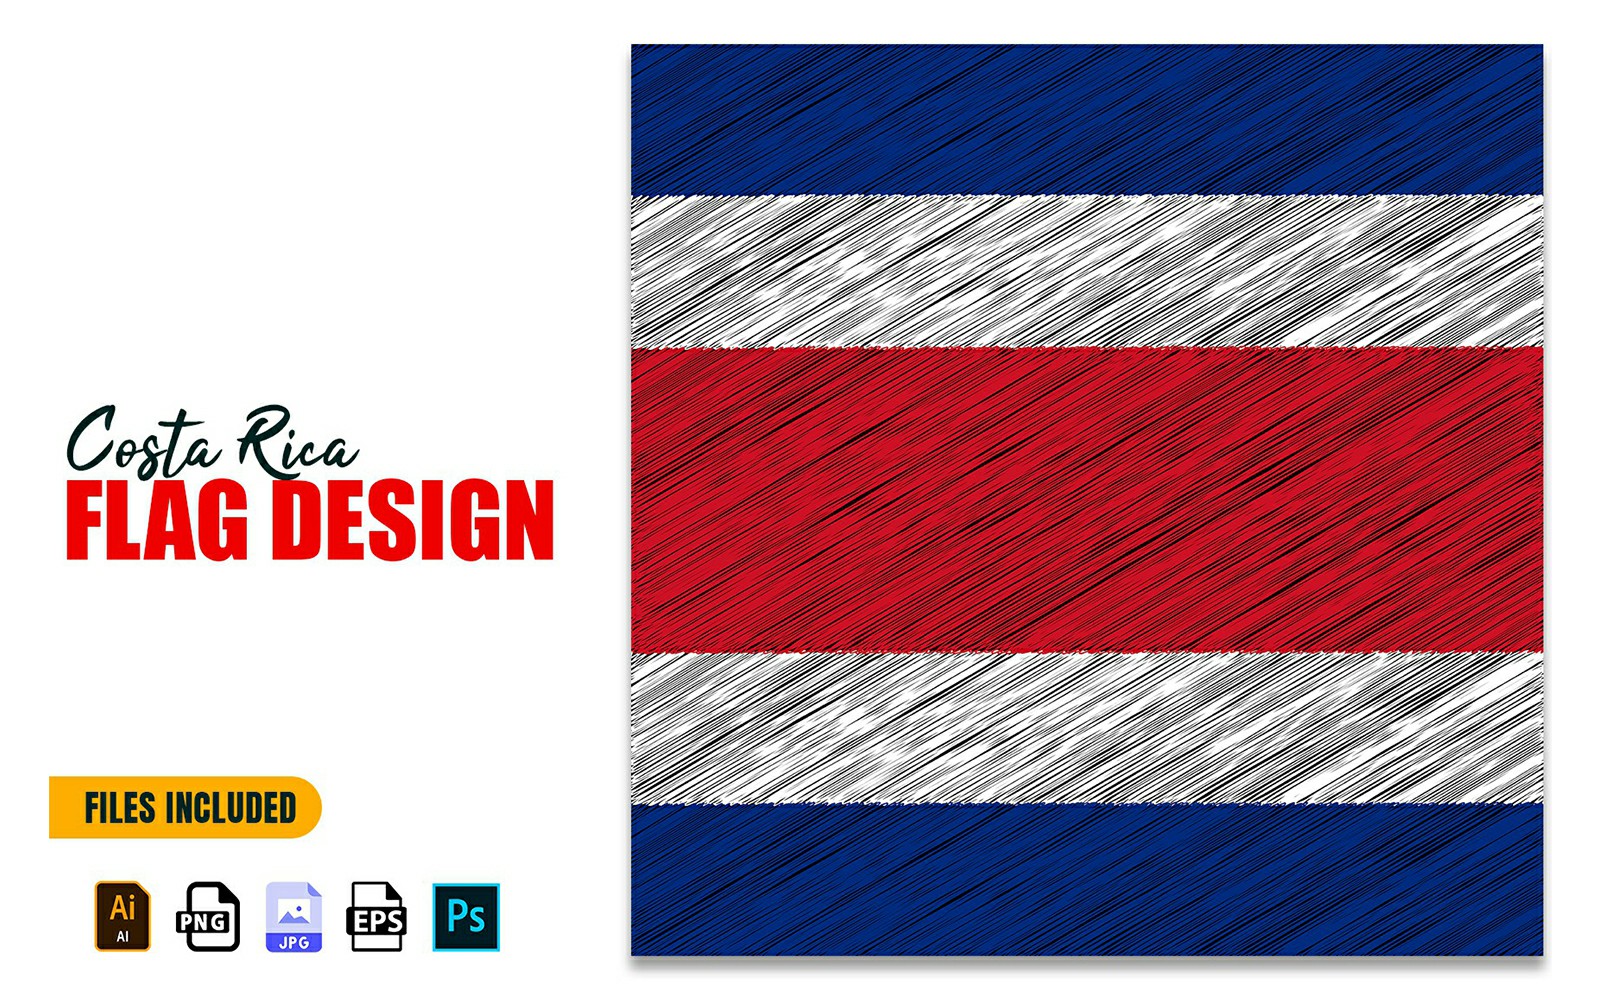 15 September Costa Rica Independence Day Flag Design Illustration